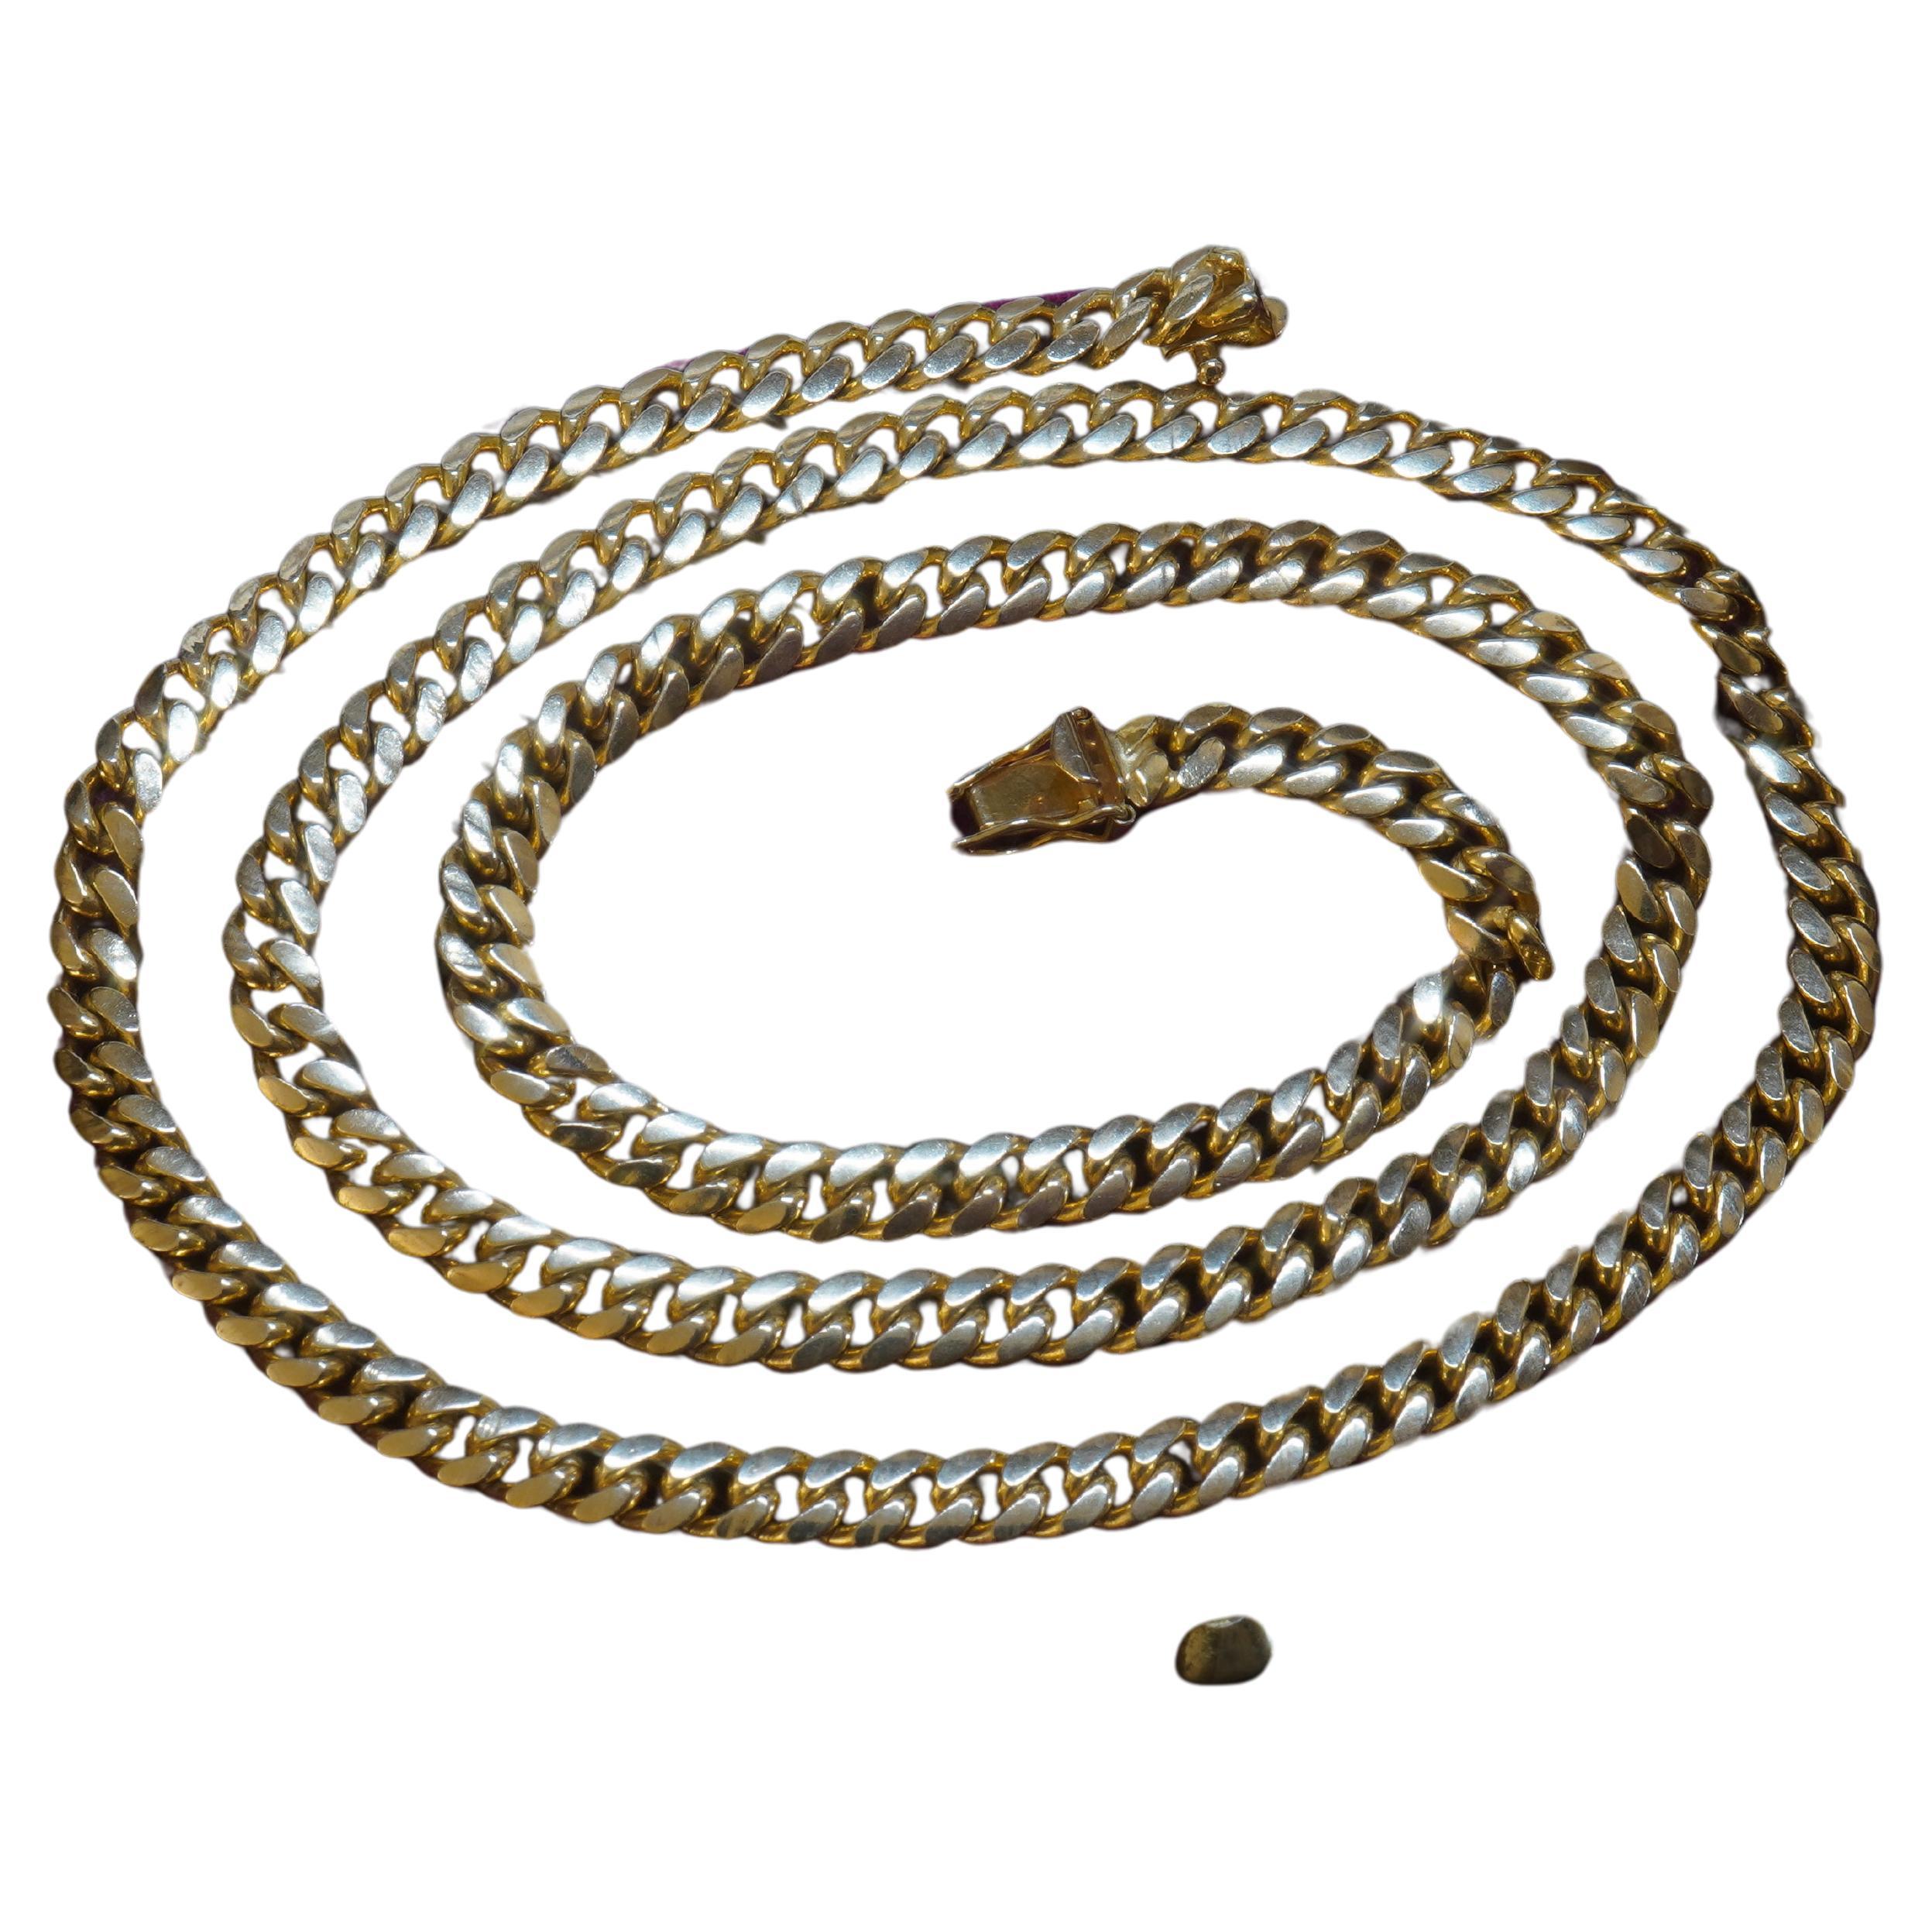 Old South Jewels est fier de présenter... un collier en or massif 14K VINTAGE CUBAN LINK !   

Ce collier élégant s'accorde avec toutes les tenues.   Or massif épais et lourd.   Convient à l'homme ou à la femme.    

Ce magnifique collier en or